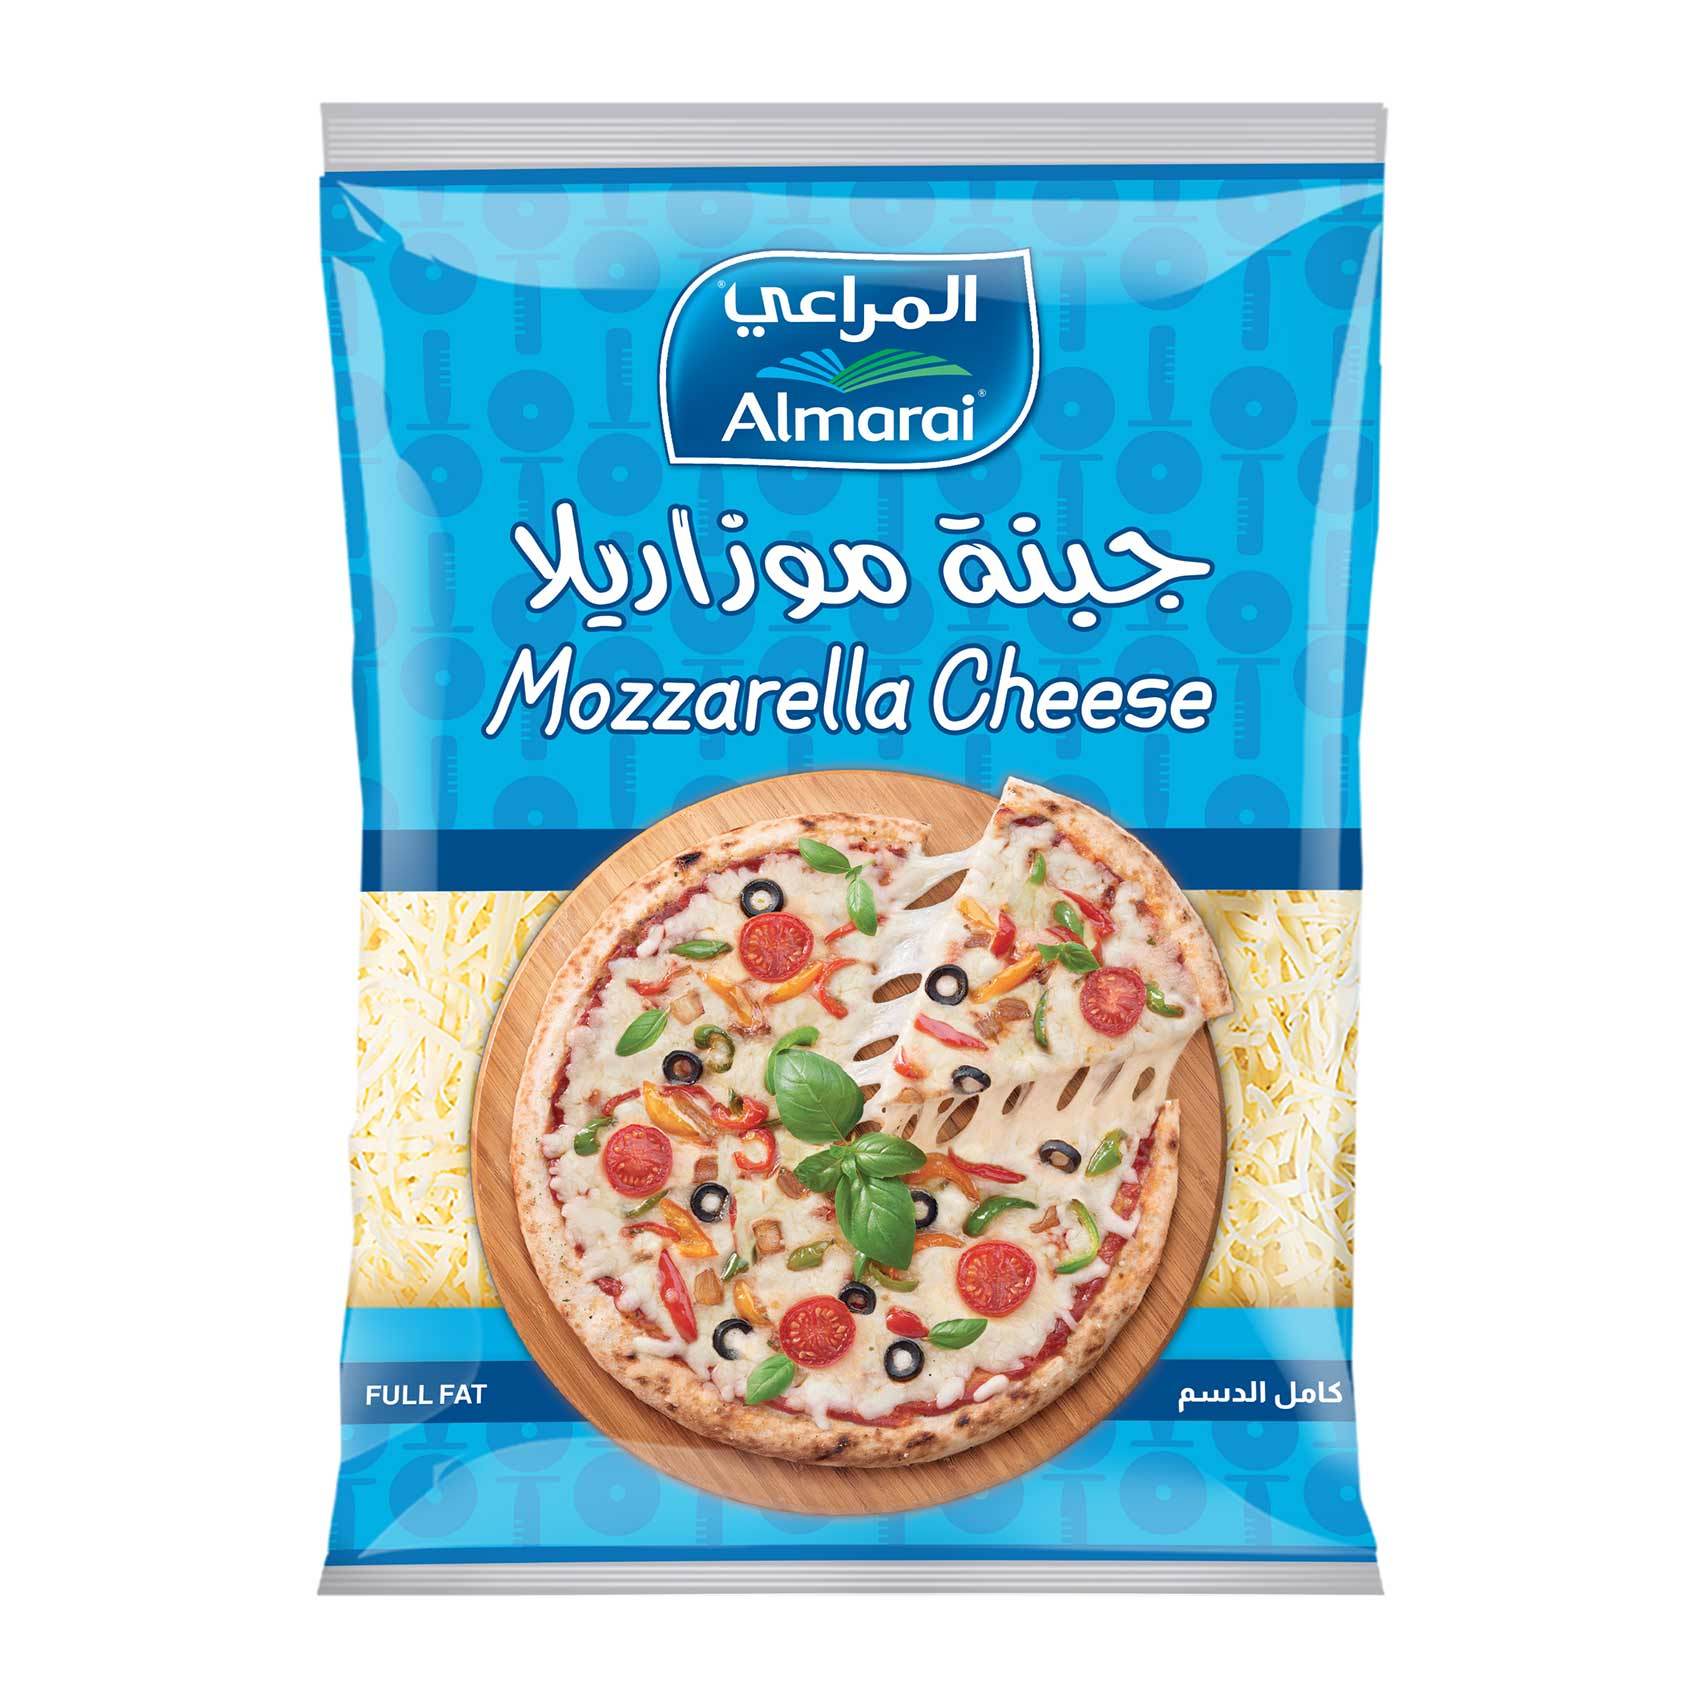 اشترِ المراعي جبنة موزاريلا كاملة الدسم 200 غ تسوق عبر الإنترنت طعام طازج على كارفور المملكة العربية السعودية